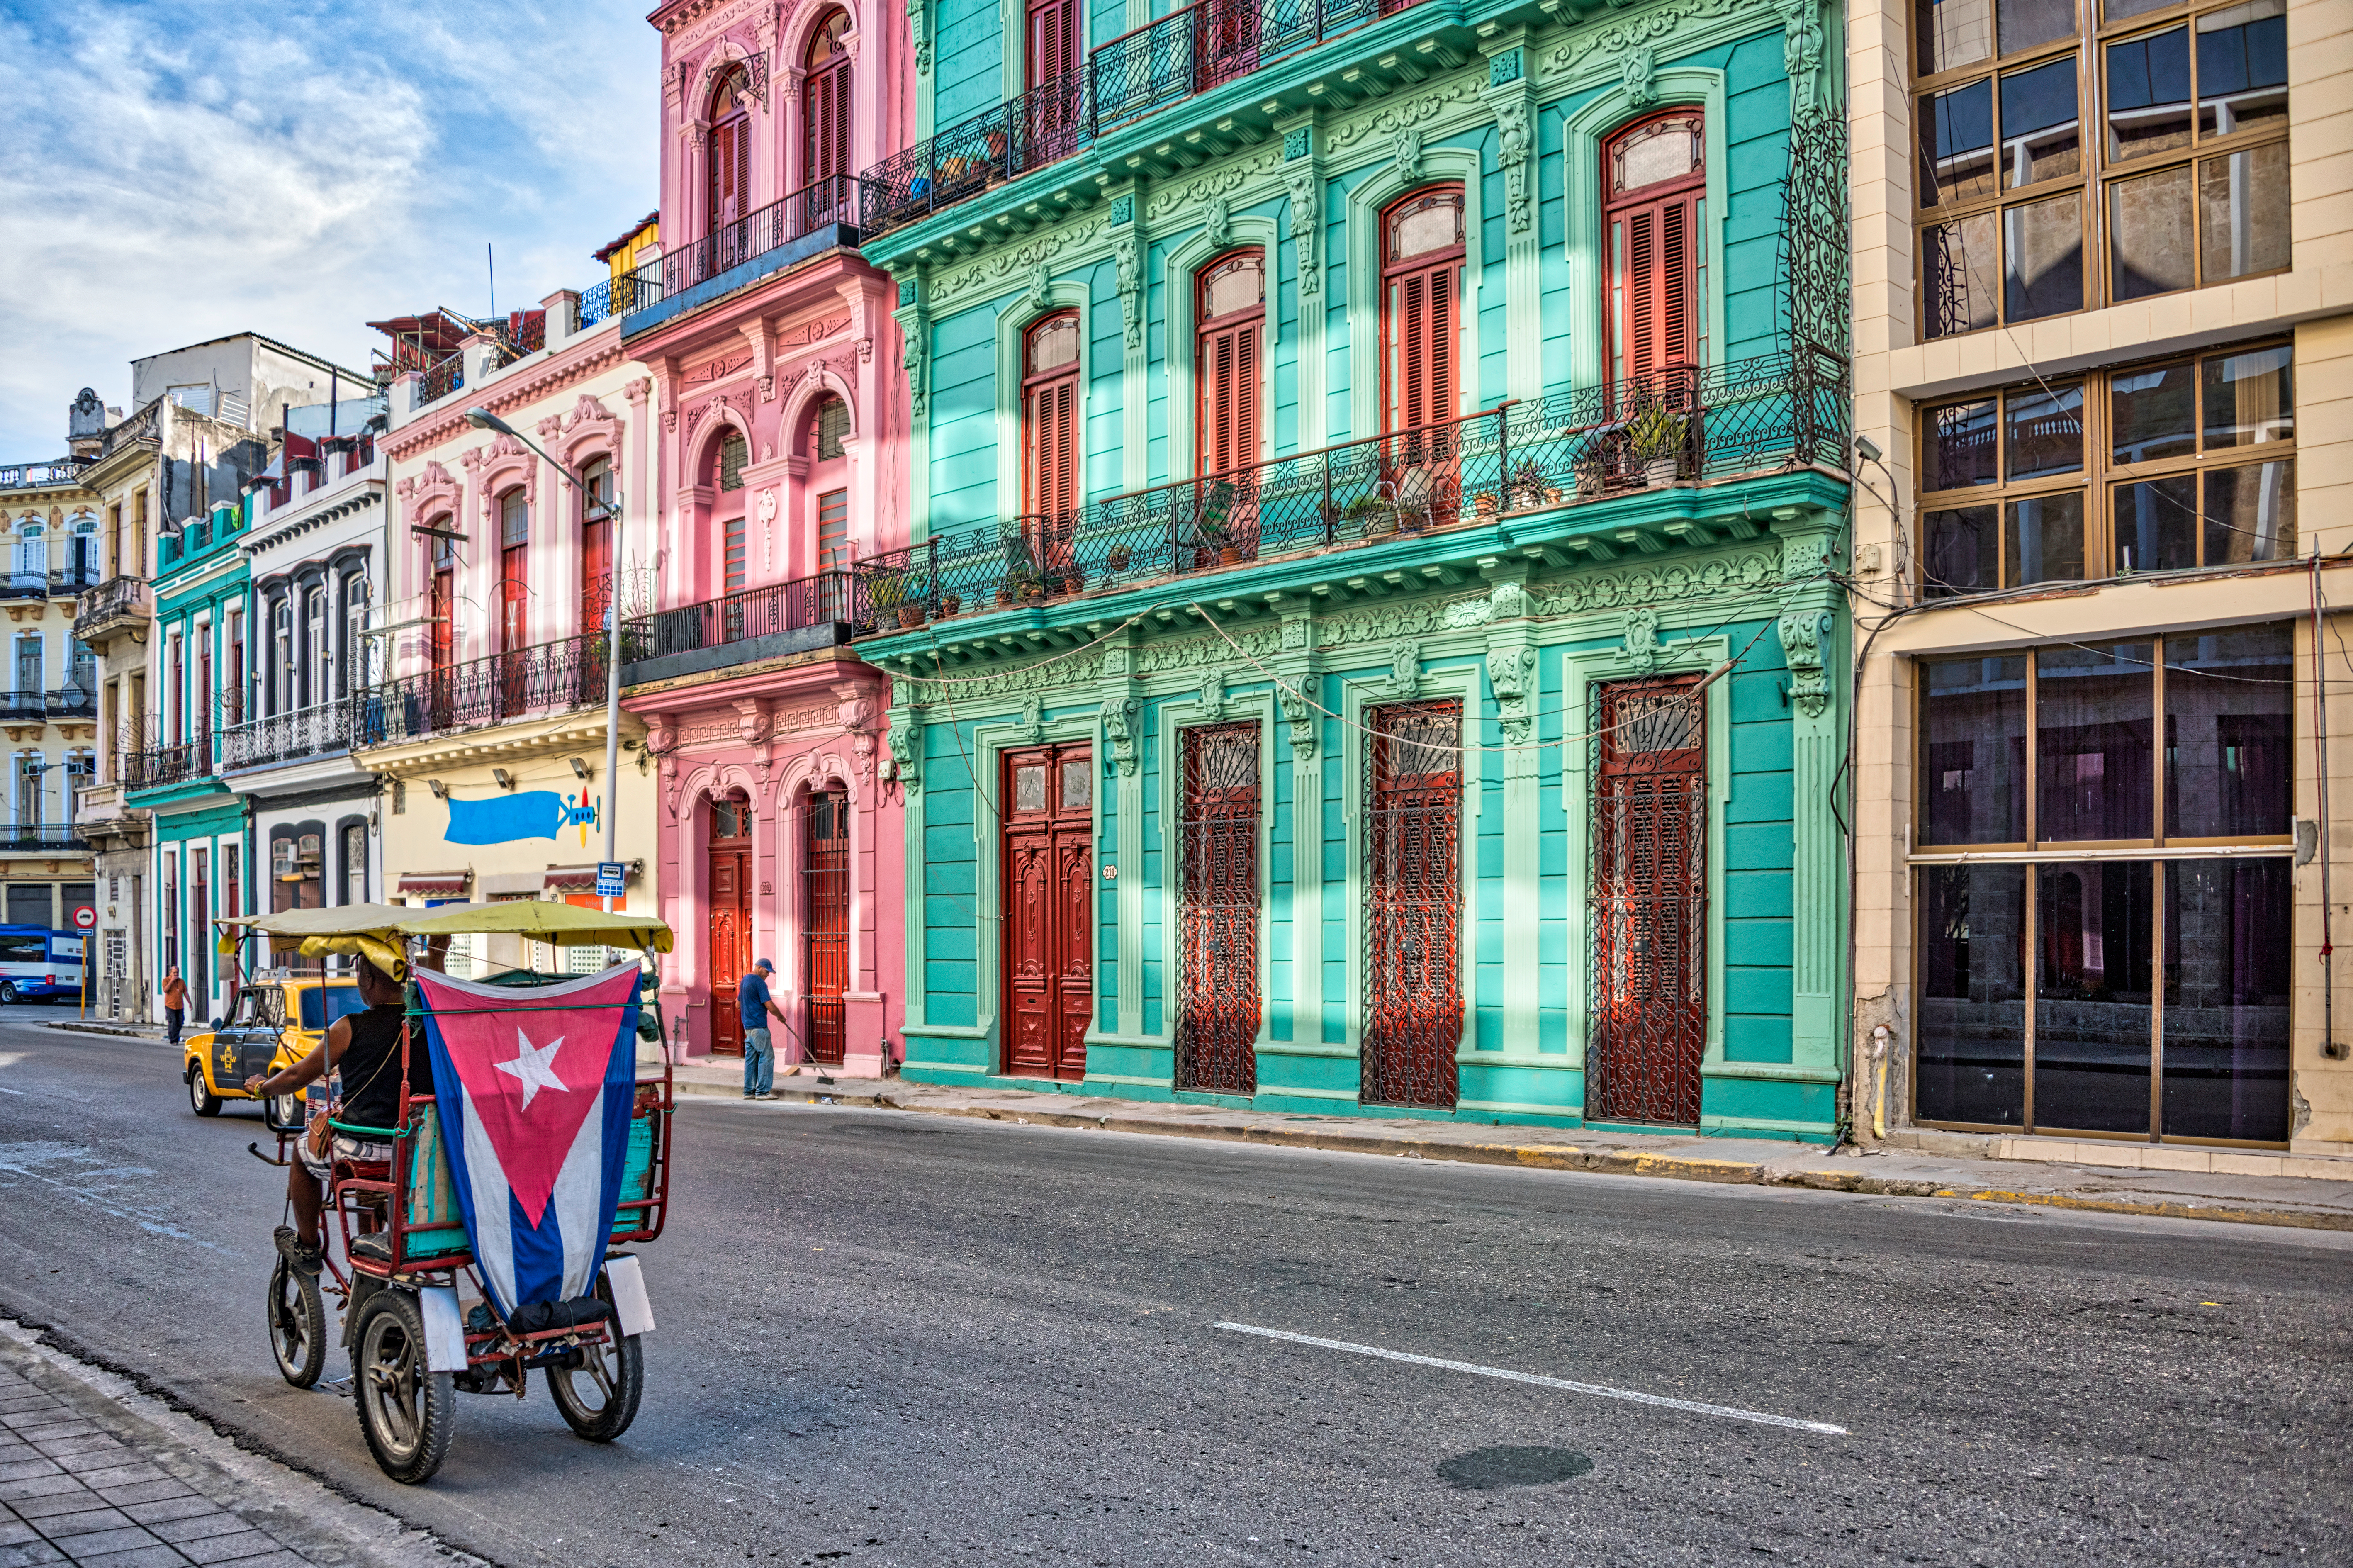     À Cuba, les coupures de courant exaspèrent la population

